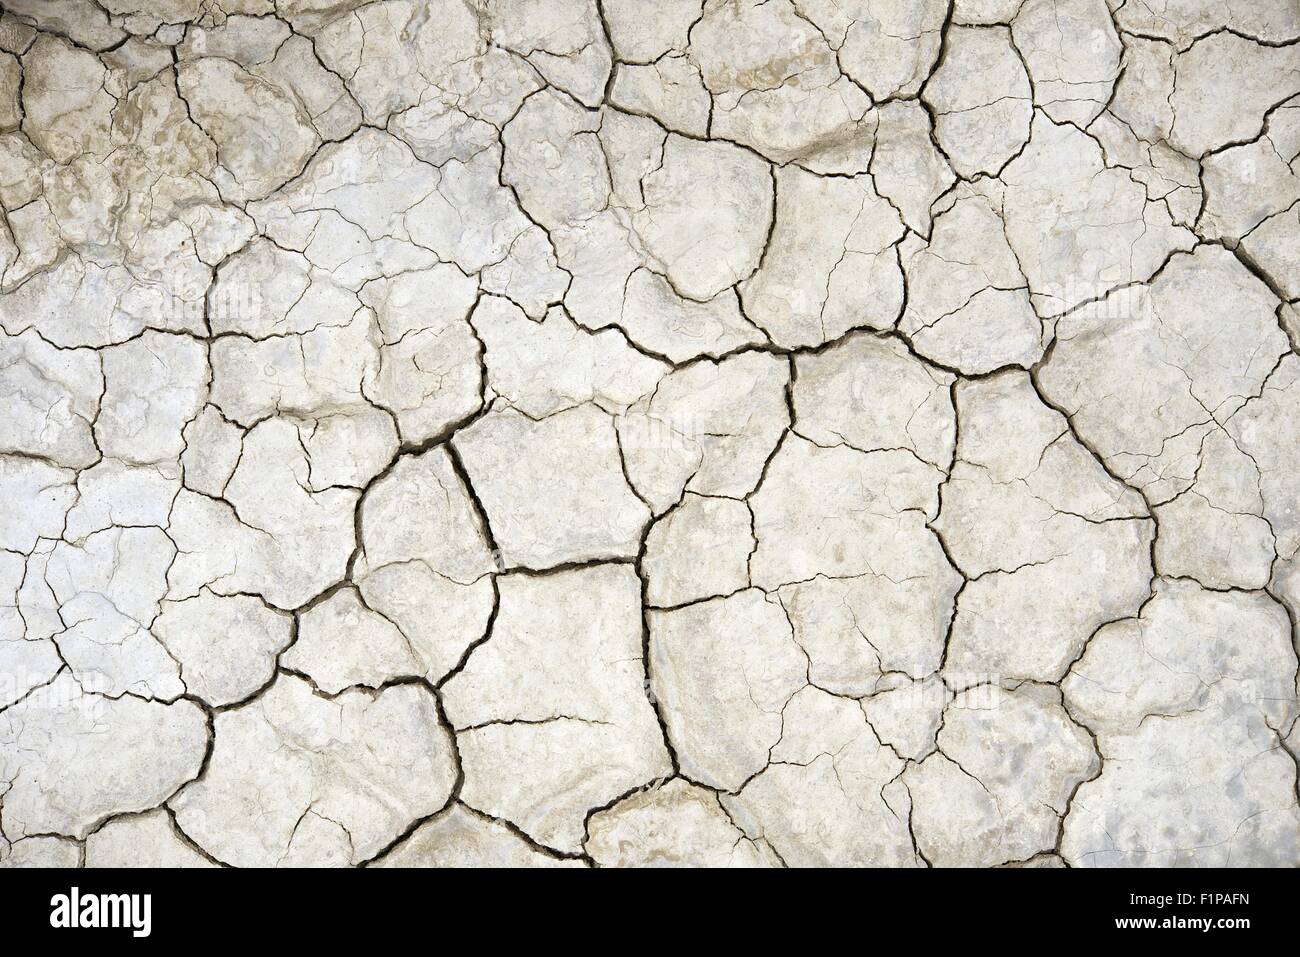 Terreni agricoli a secco - la siccità estrema. La stagione secca del tema. Natura raccolta di fotografie. Foto Stock